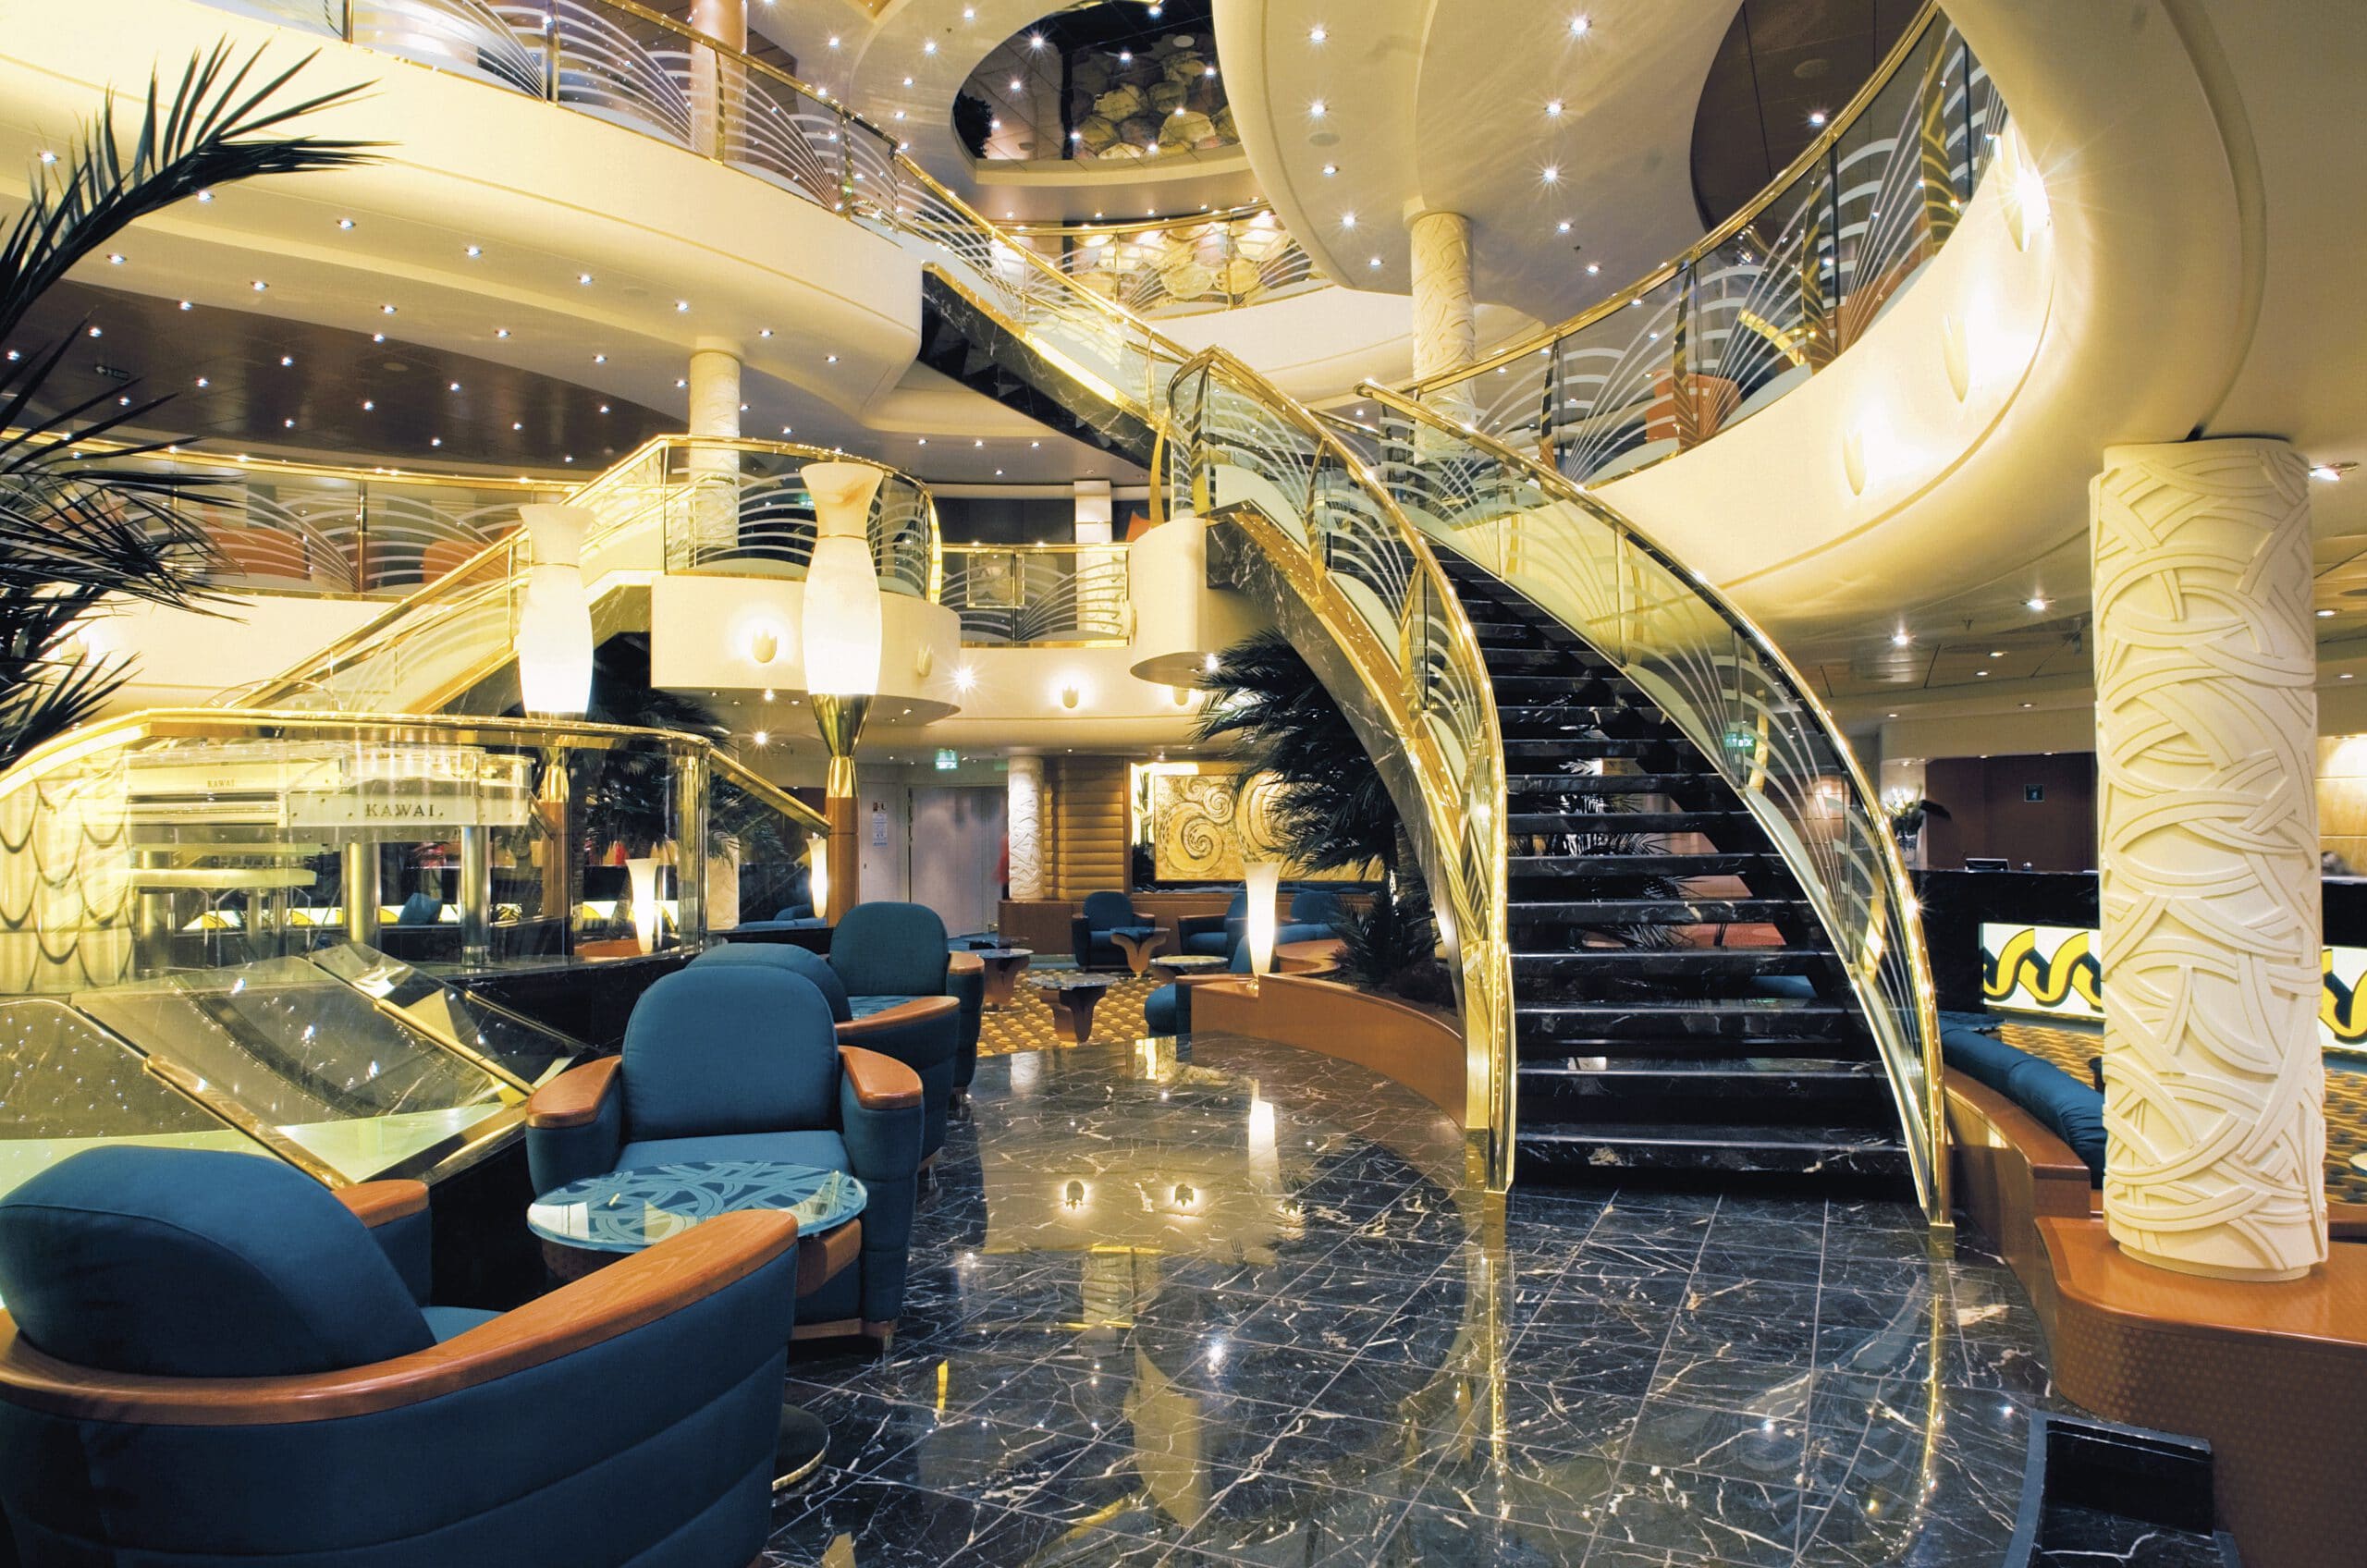 Cruiseschip-MSC Musica-MSC Cruises-Atrium